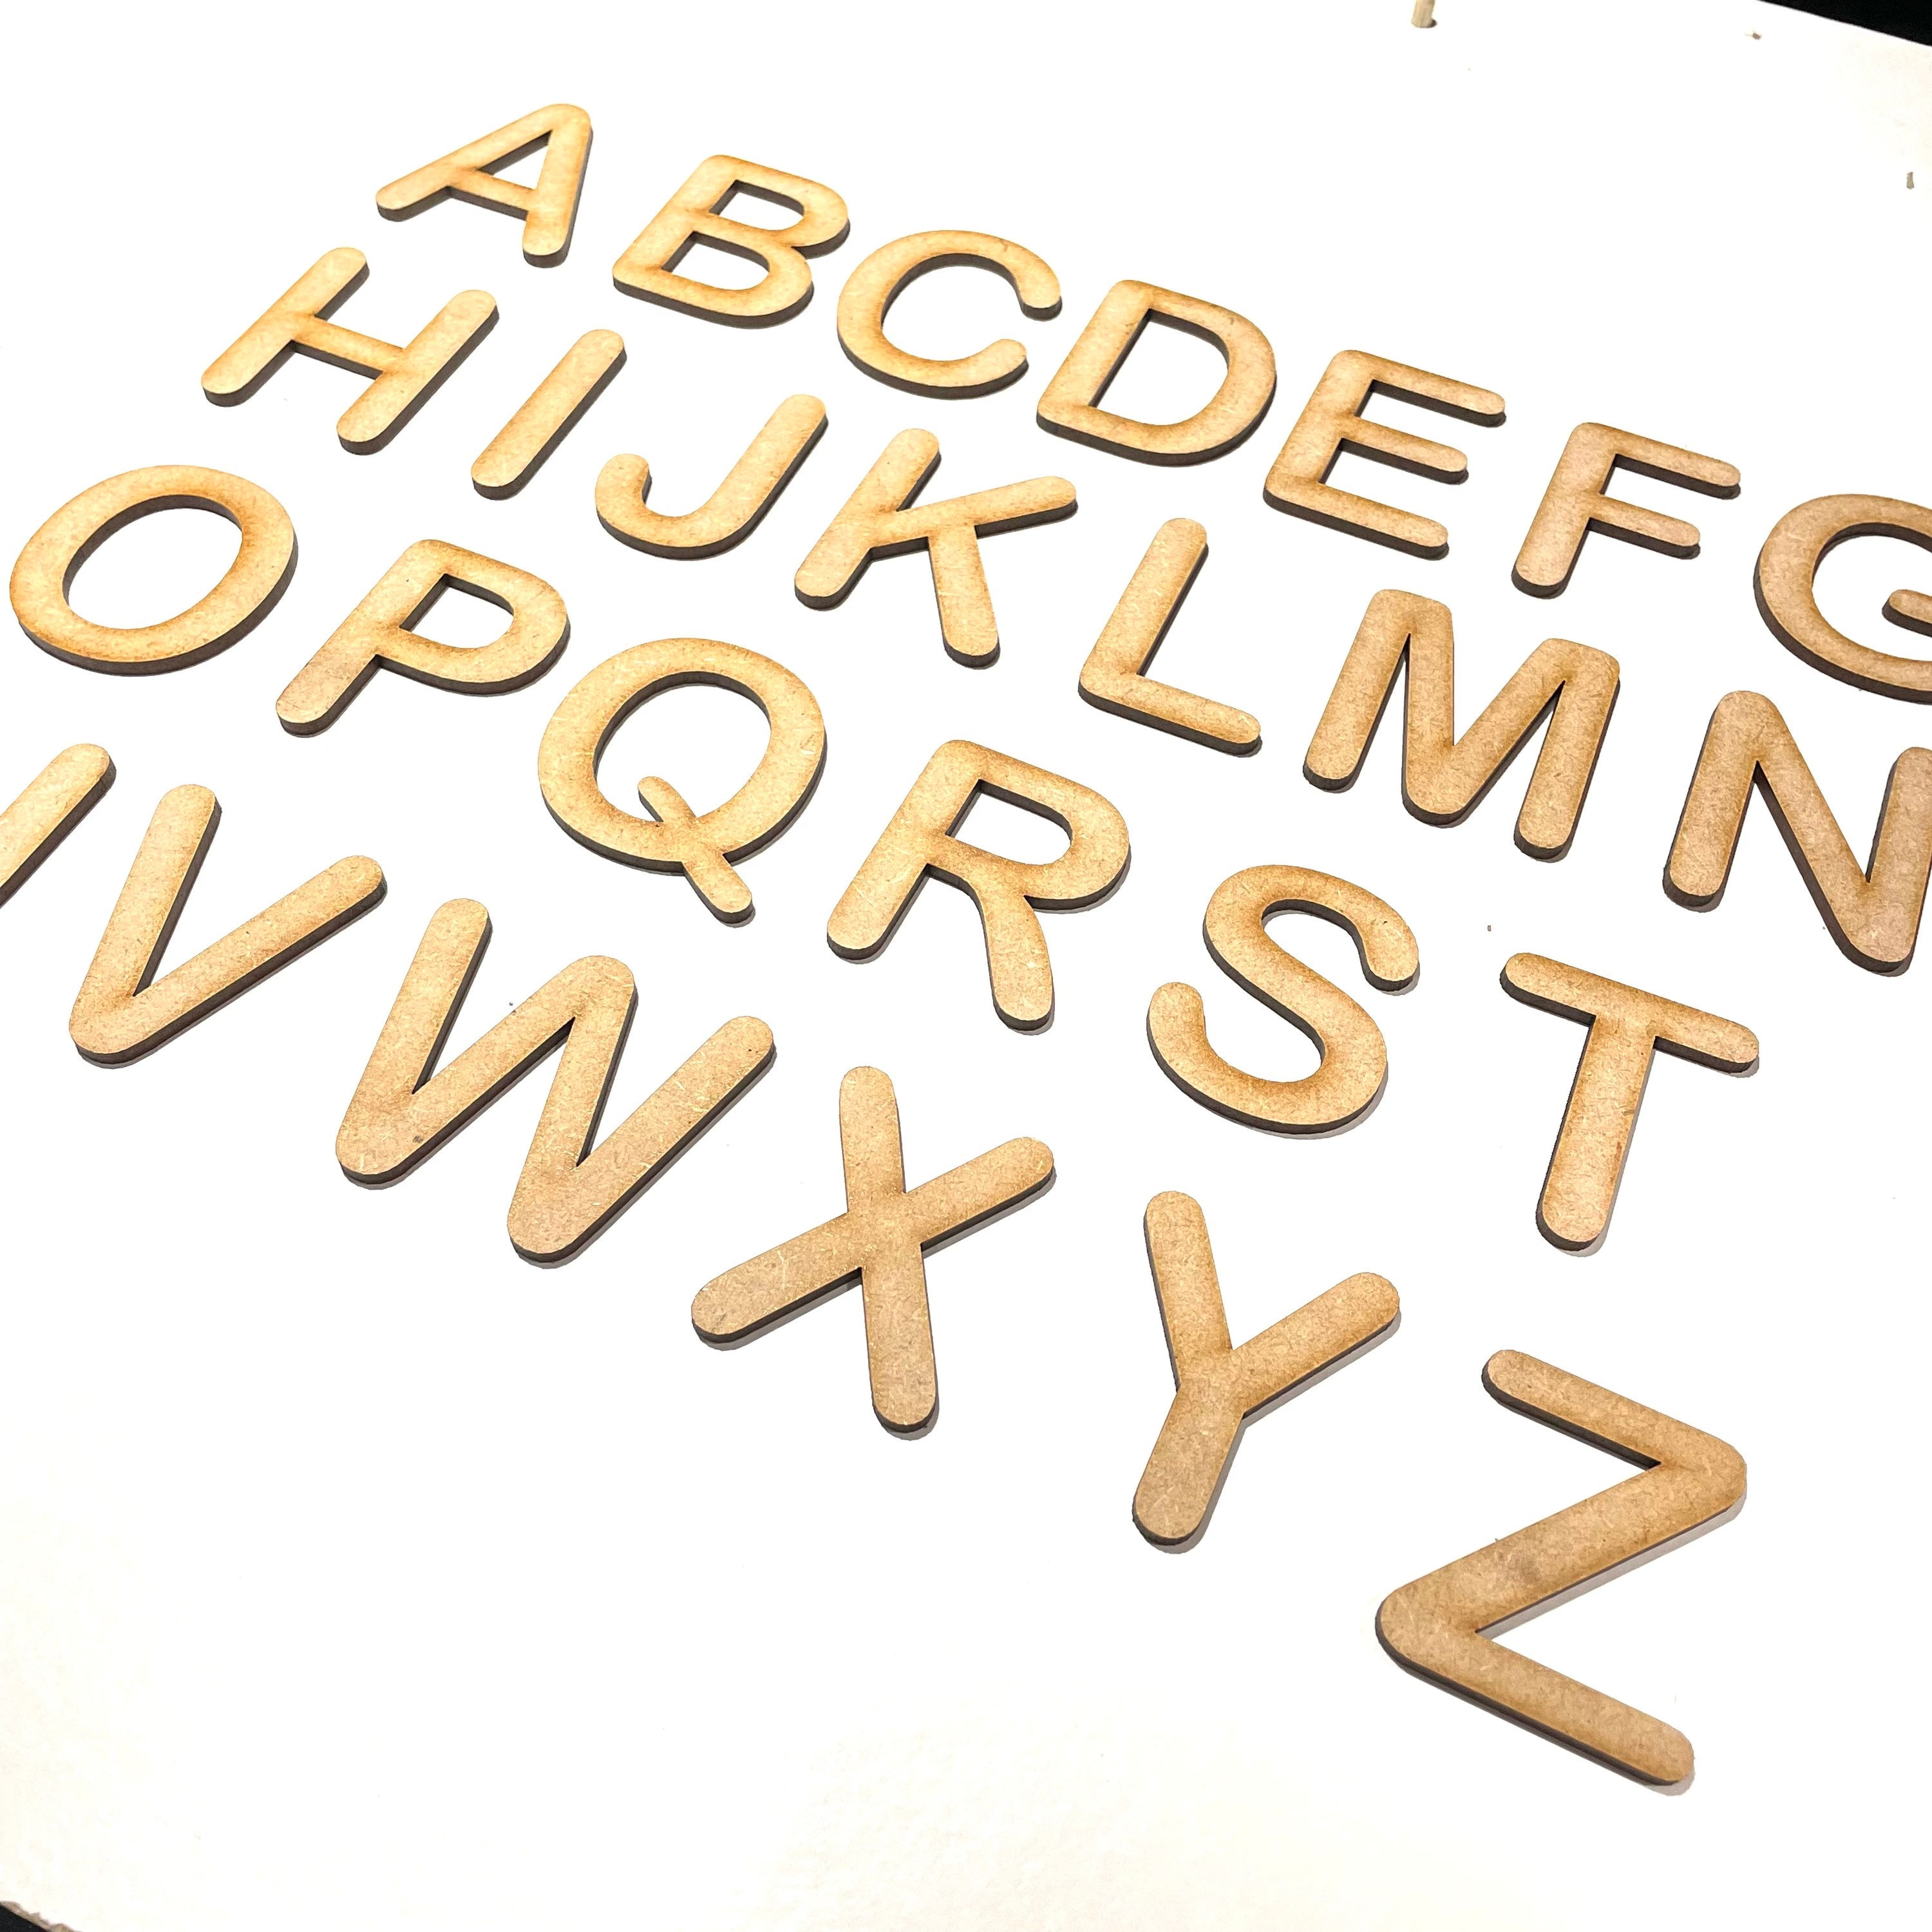 A-Z Alphabet Branding Irons - 2